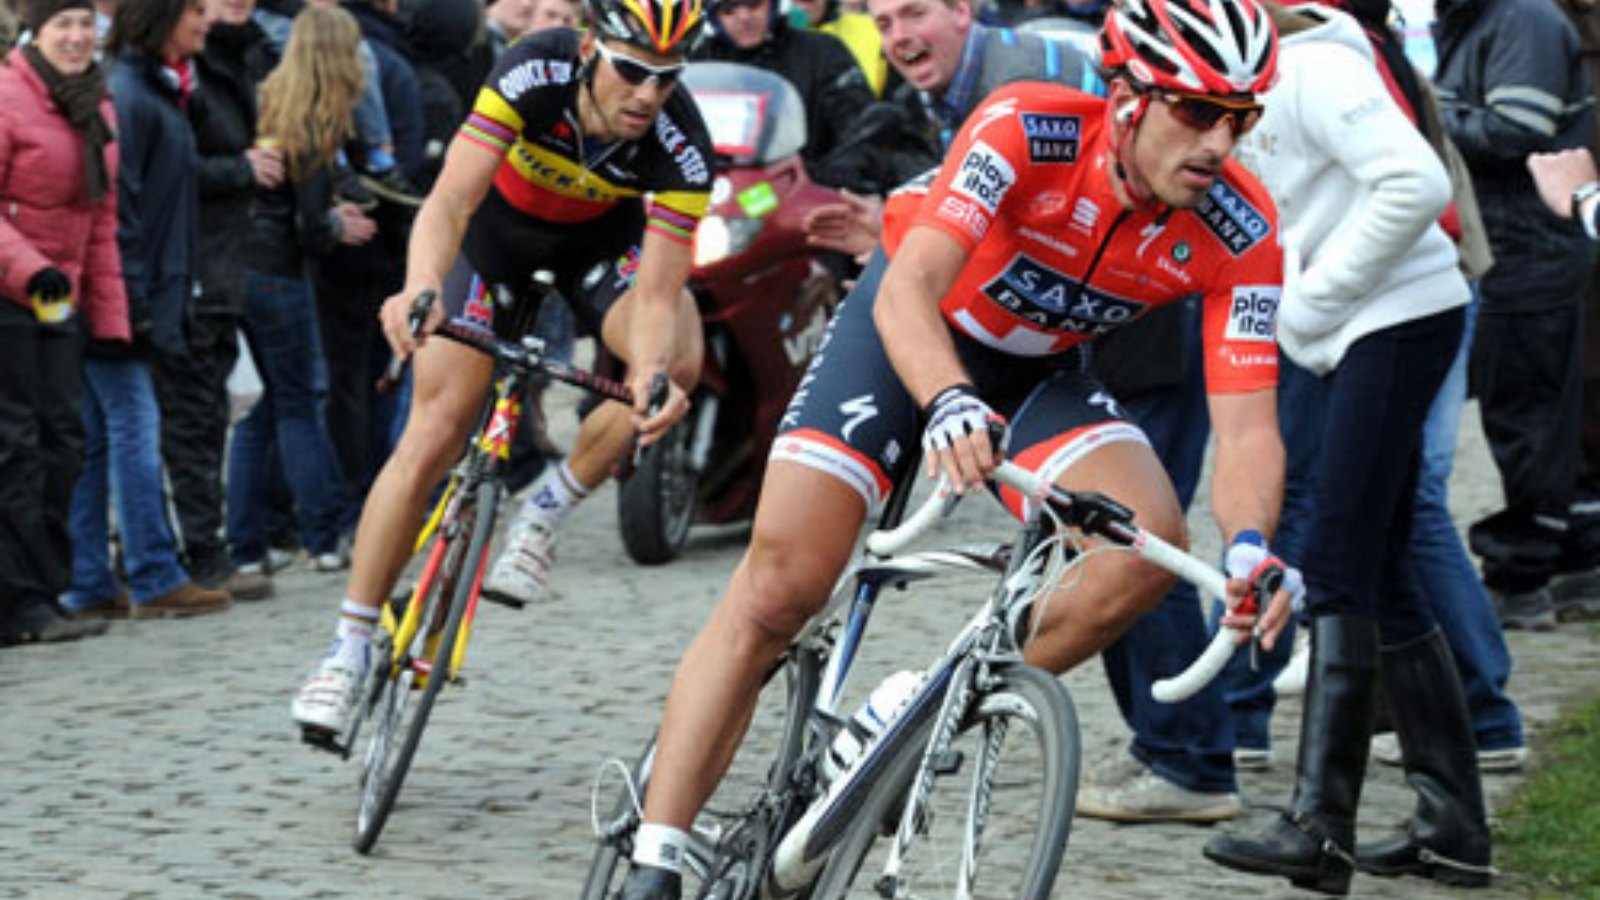 Fabian Cancellara and Tom Boonen at Ronde van Vlaanderen Tour of Flanders